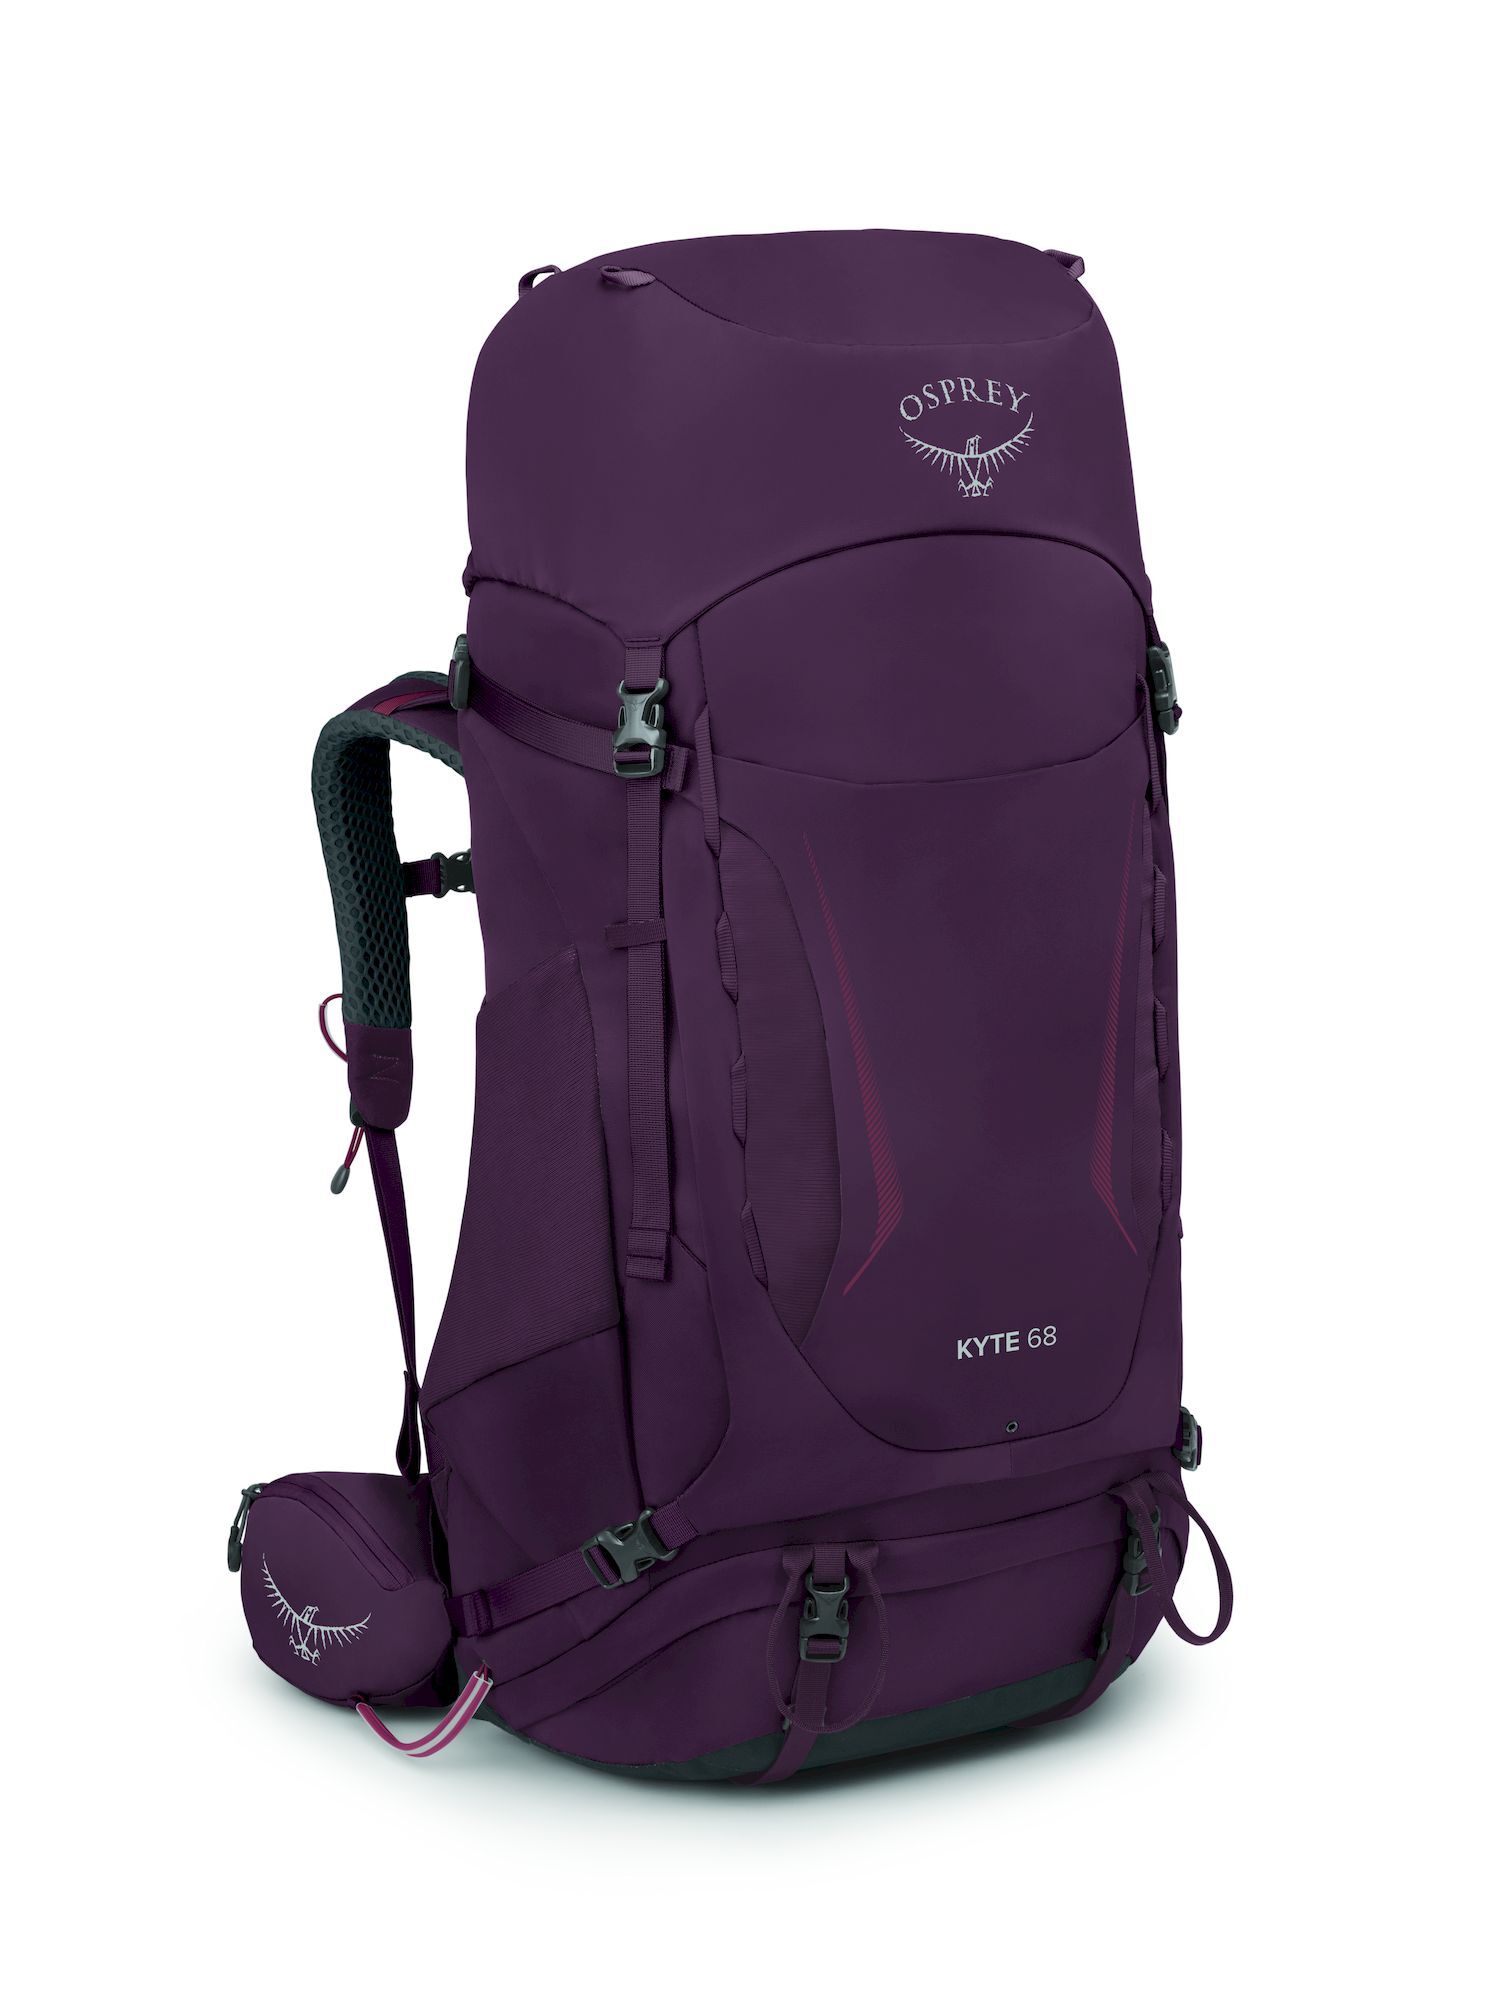 Osprey Kyte 68 - Hiking backpack - Women's | Hardloop